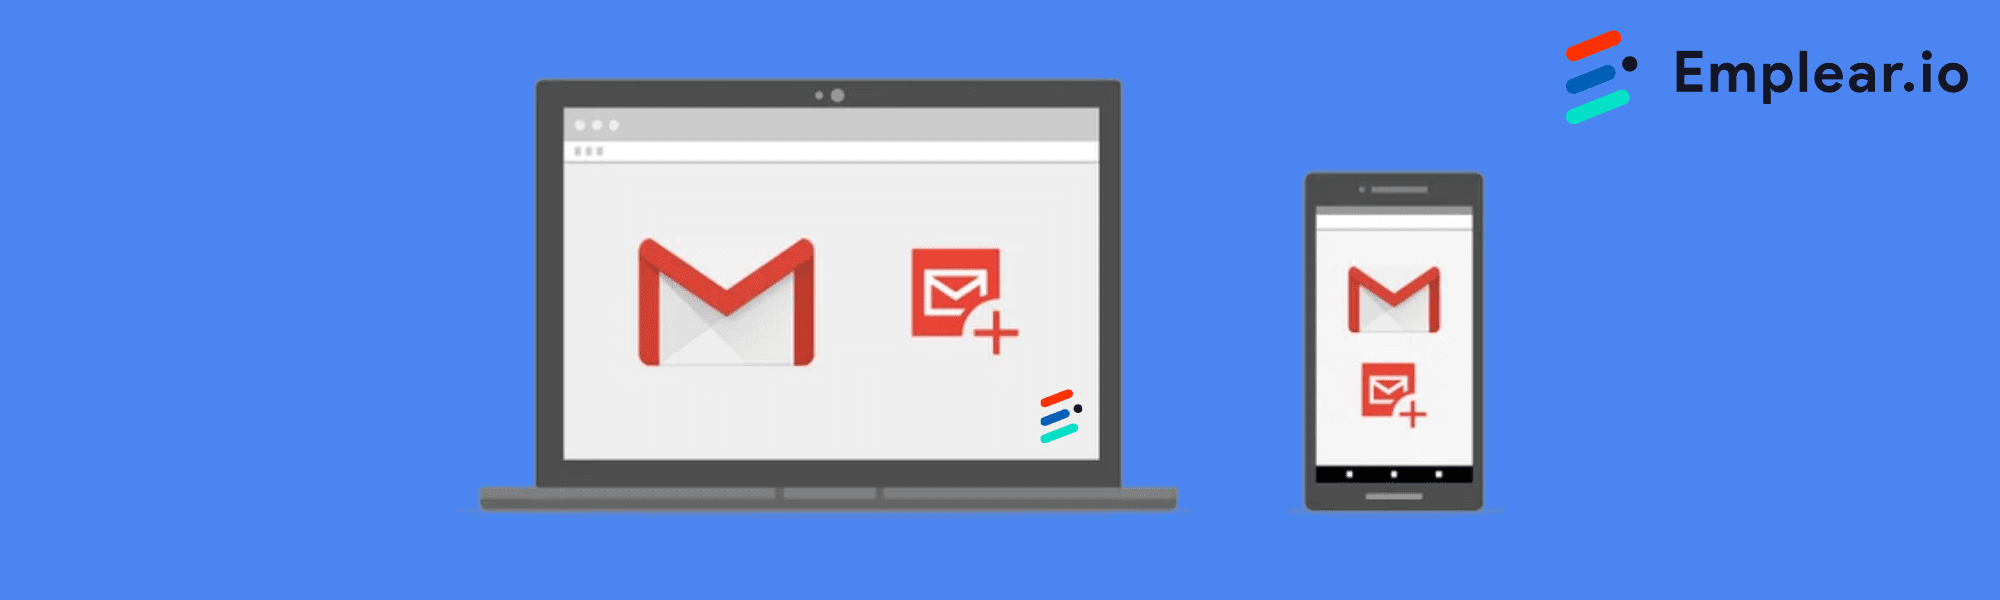 Nieuwe Gmail-richtlijnen: wat betekent dit voor recruitment?